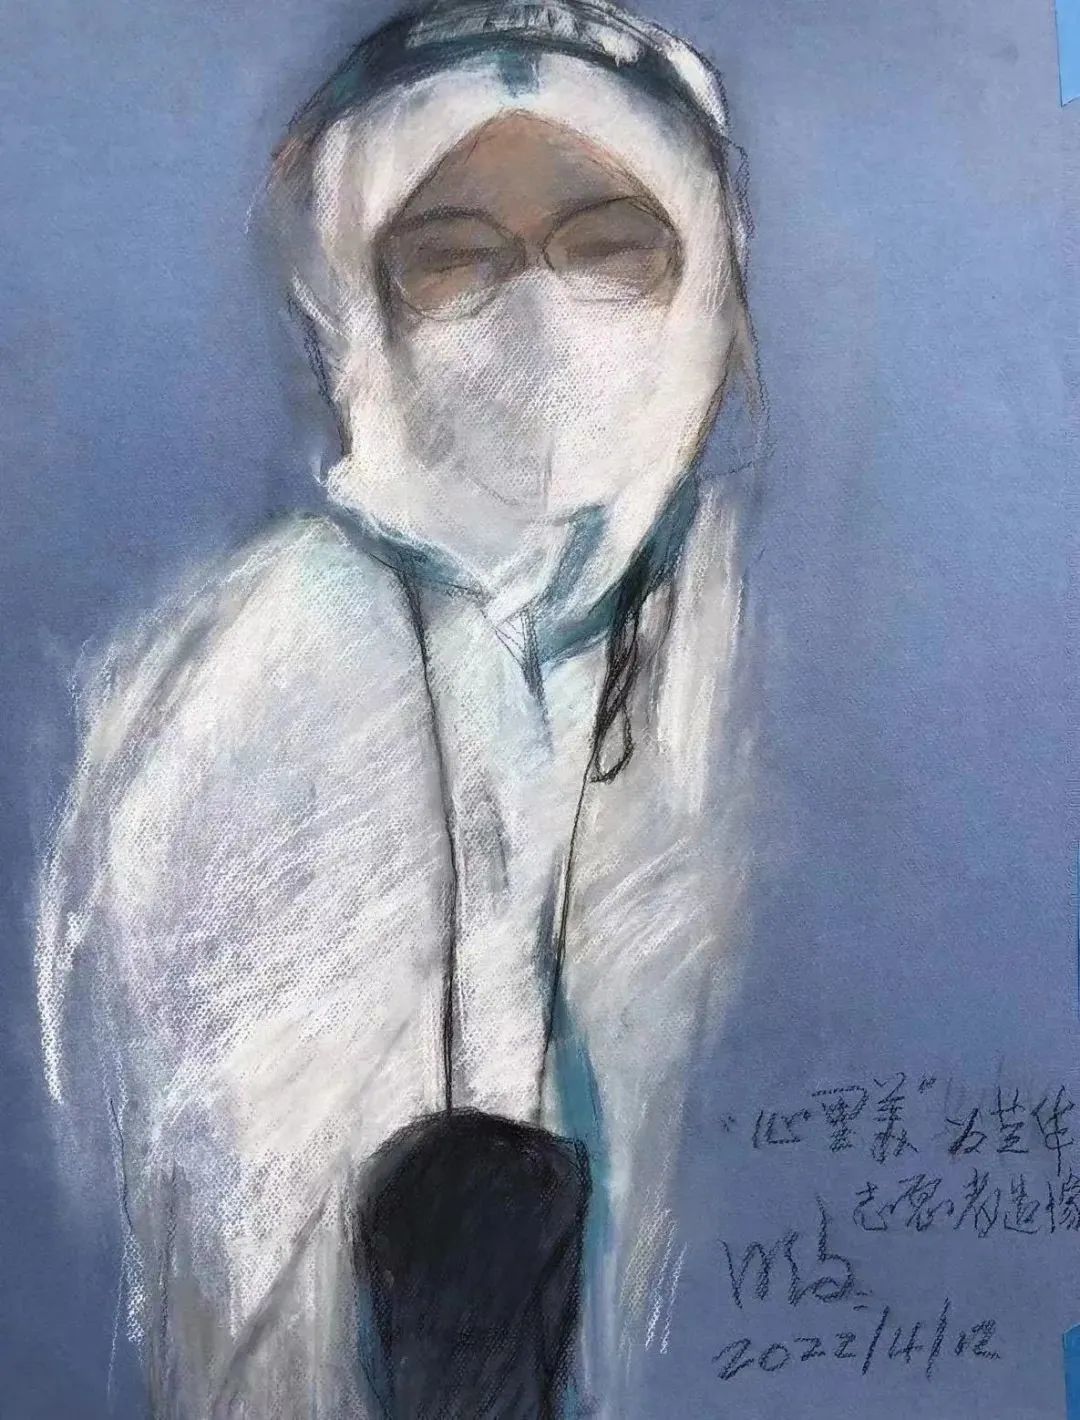 张芝华做志愿者时先生为她画的像 参考资料:新民周刊